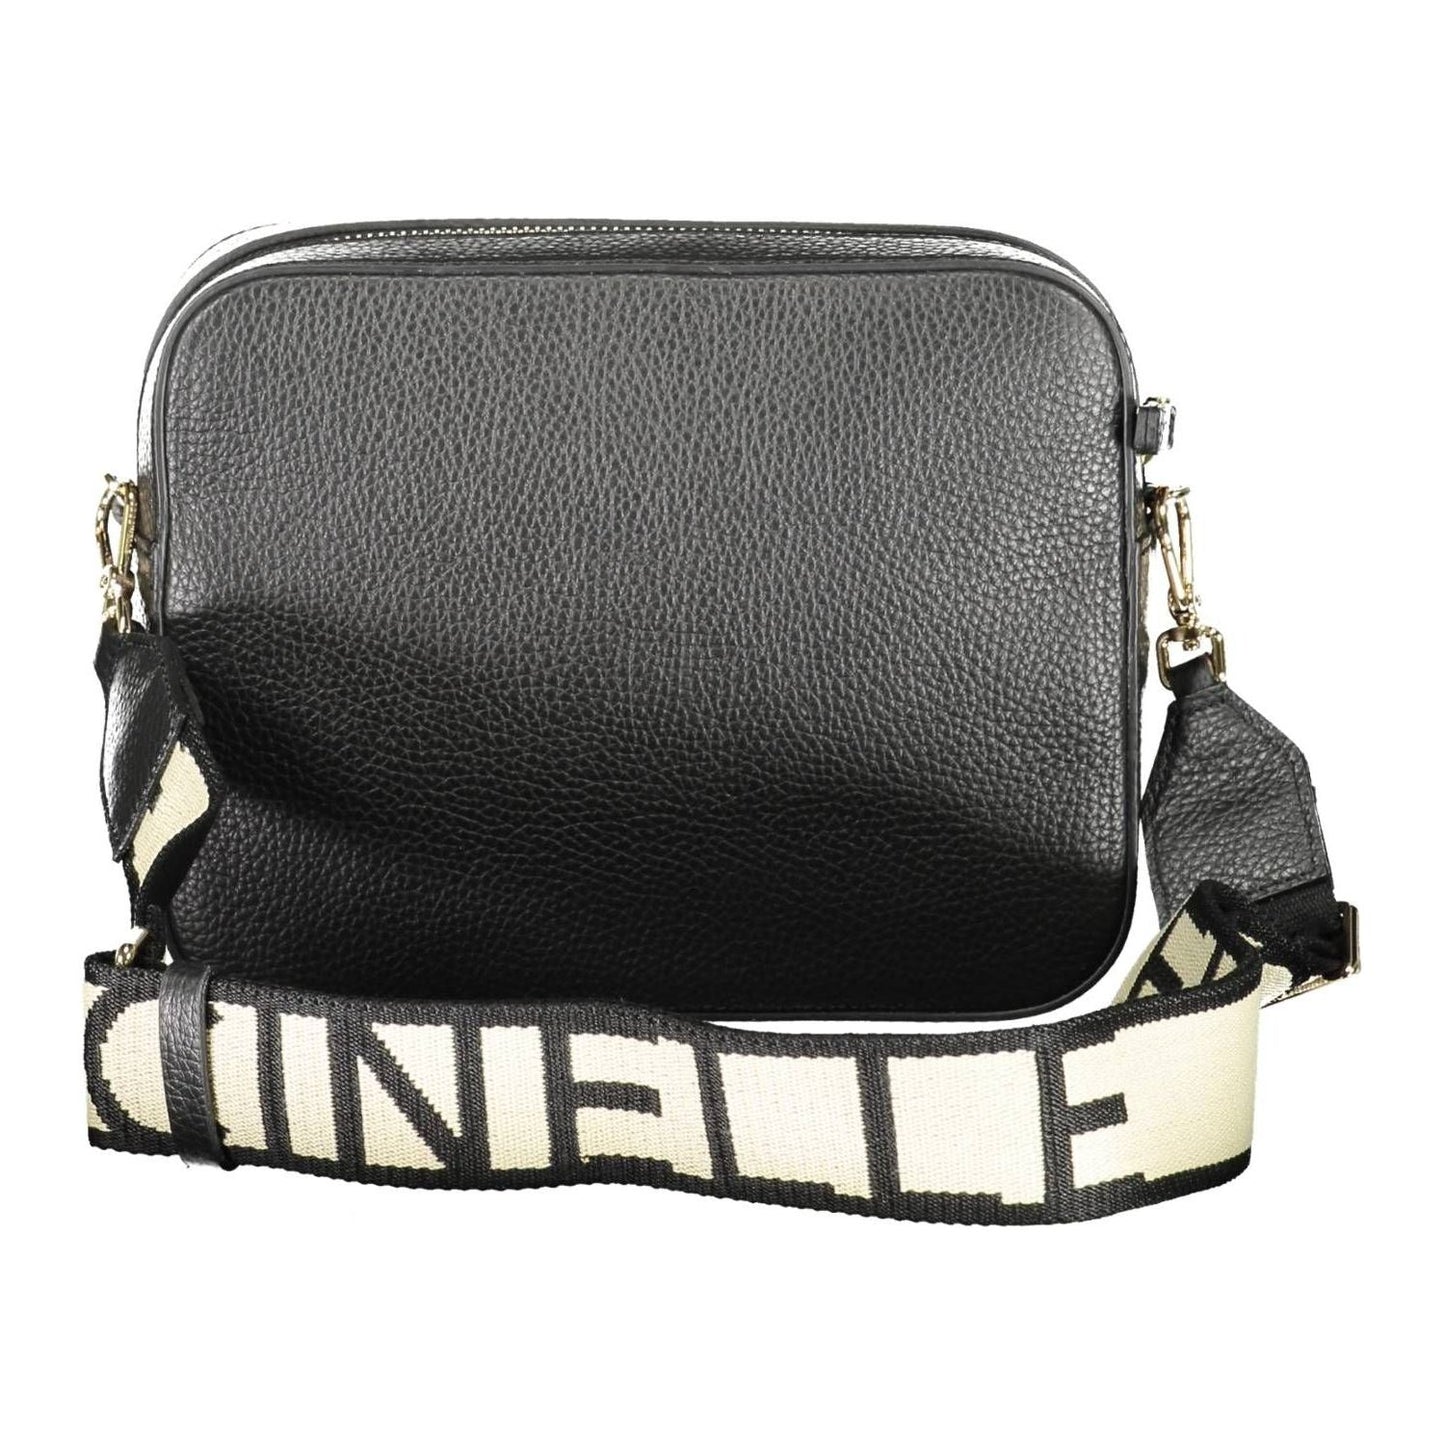 Coccinelle Elegant Black Leather Shoulder Bag with Contrasting Details elegant-black-leather-shoulder-bag-with-contrasting-details